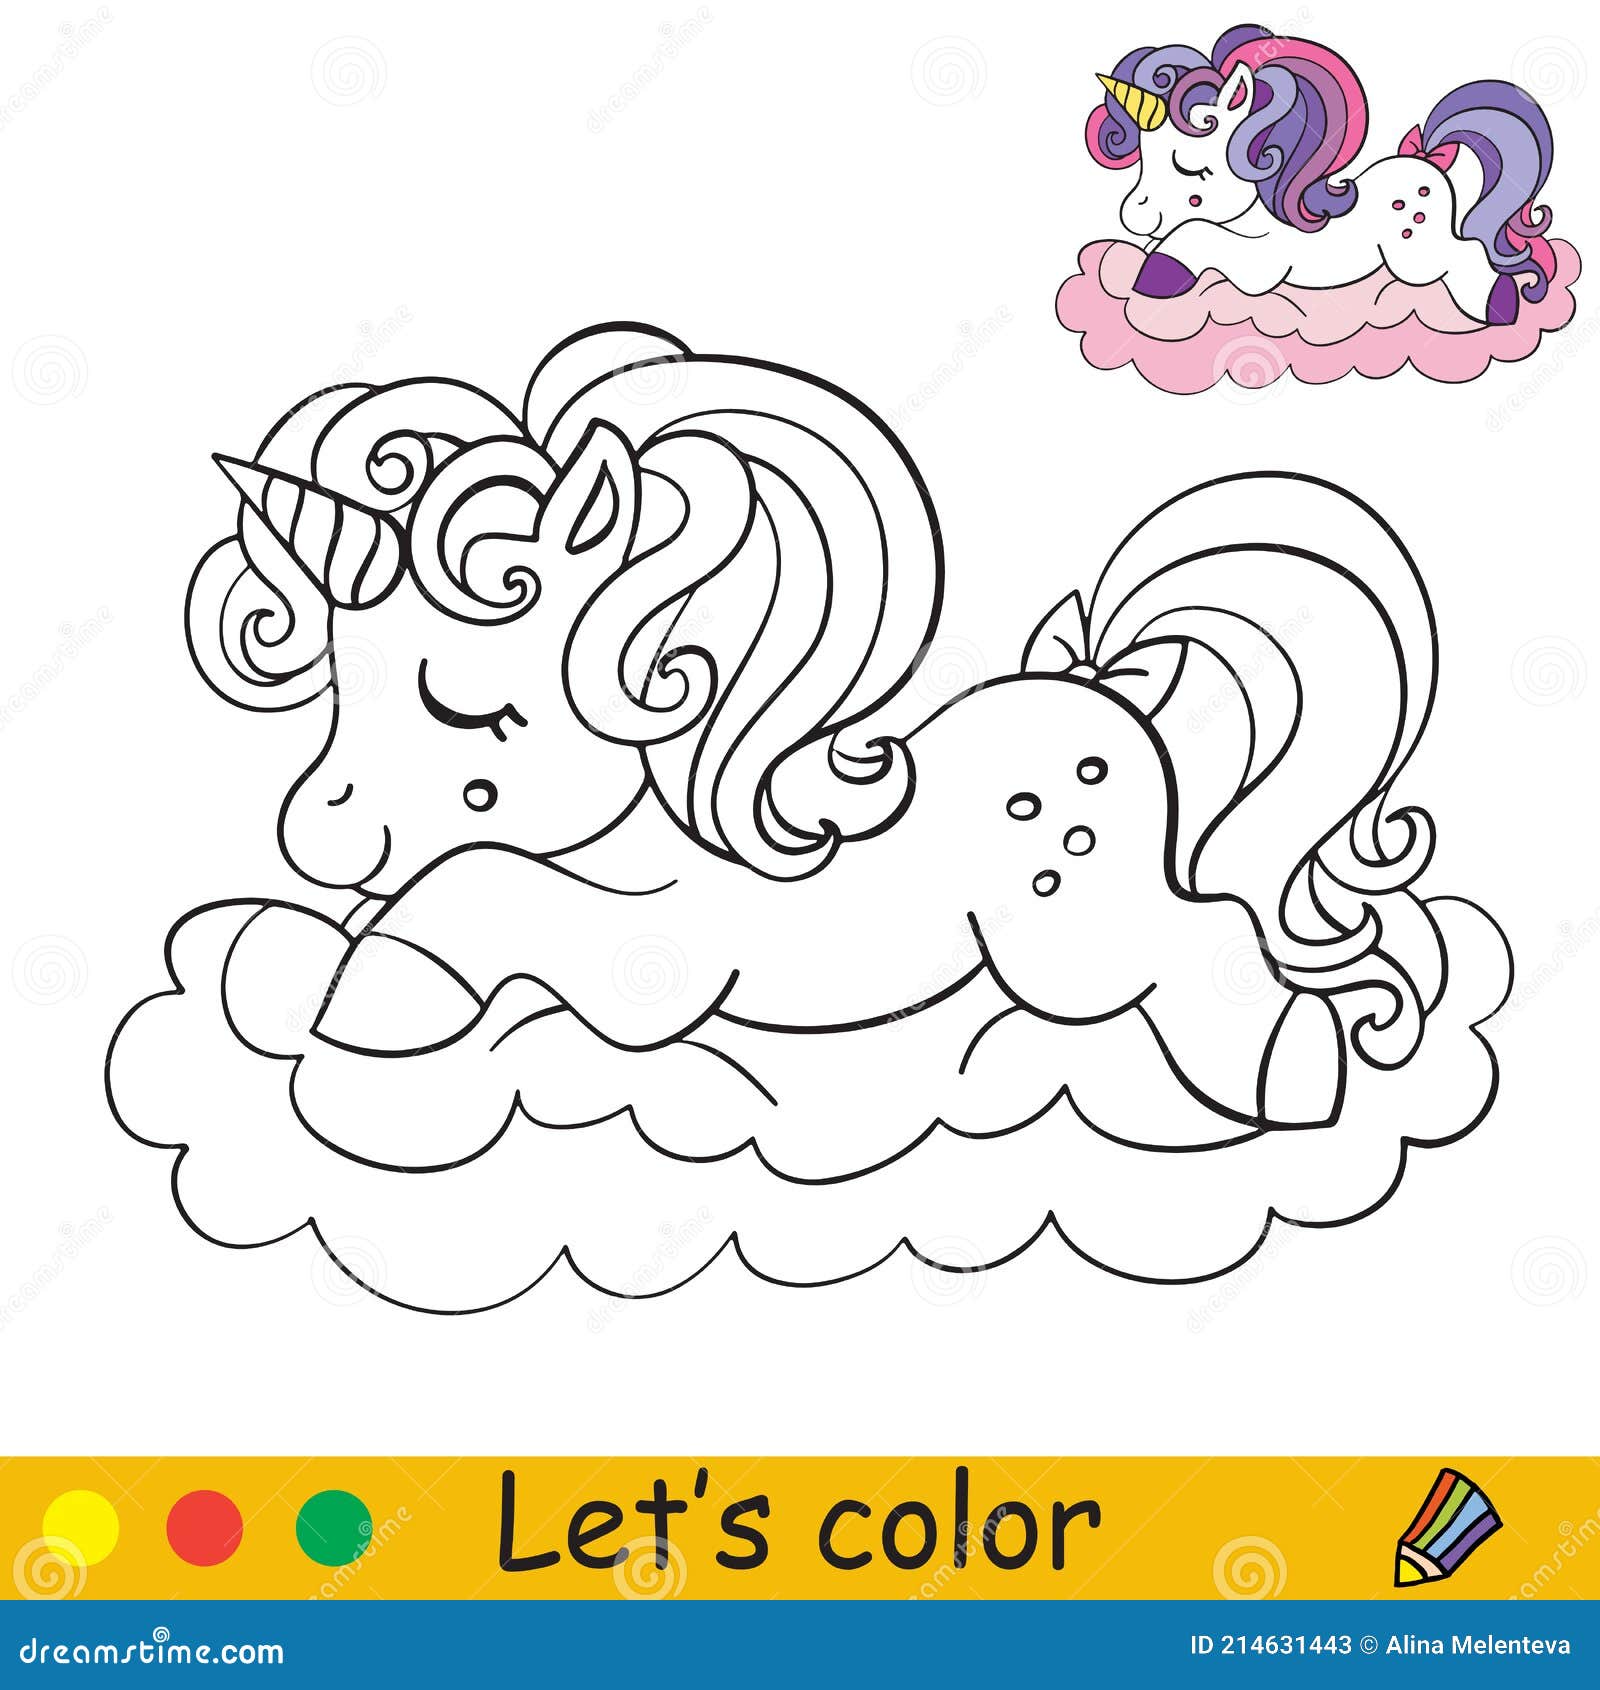 O unicórnio fofo pulando sobre o arco-íris desenhando a página para colorir